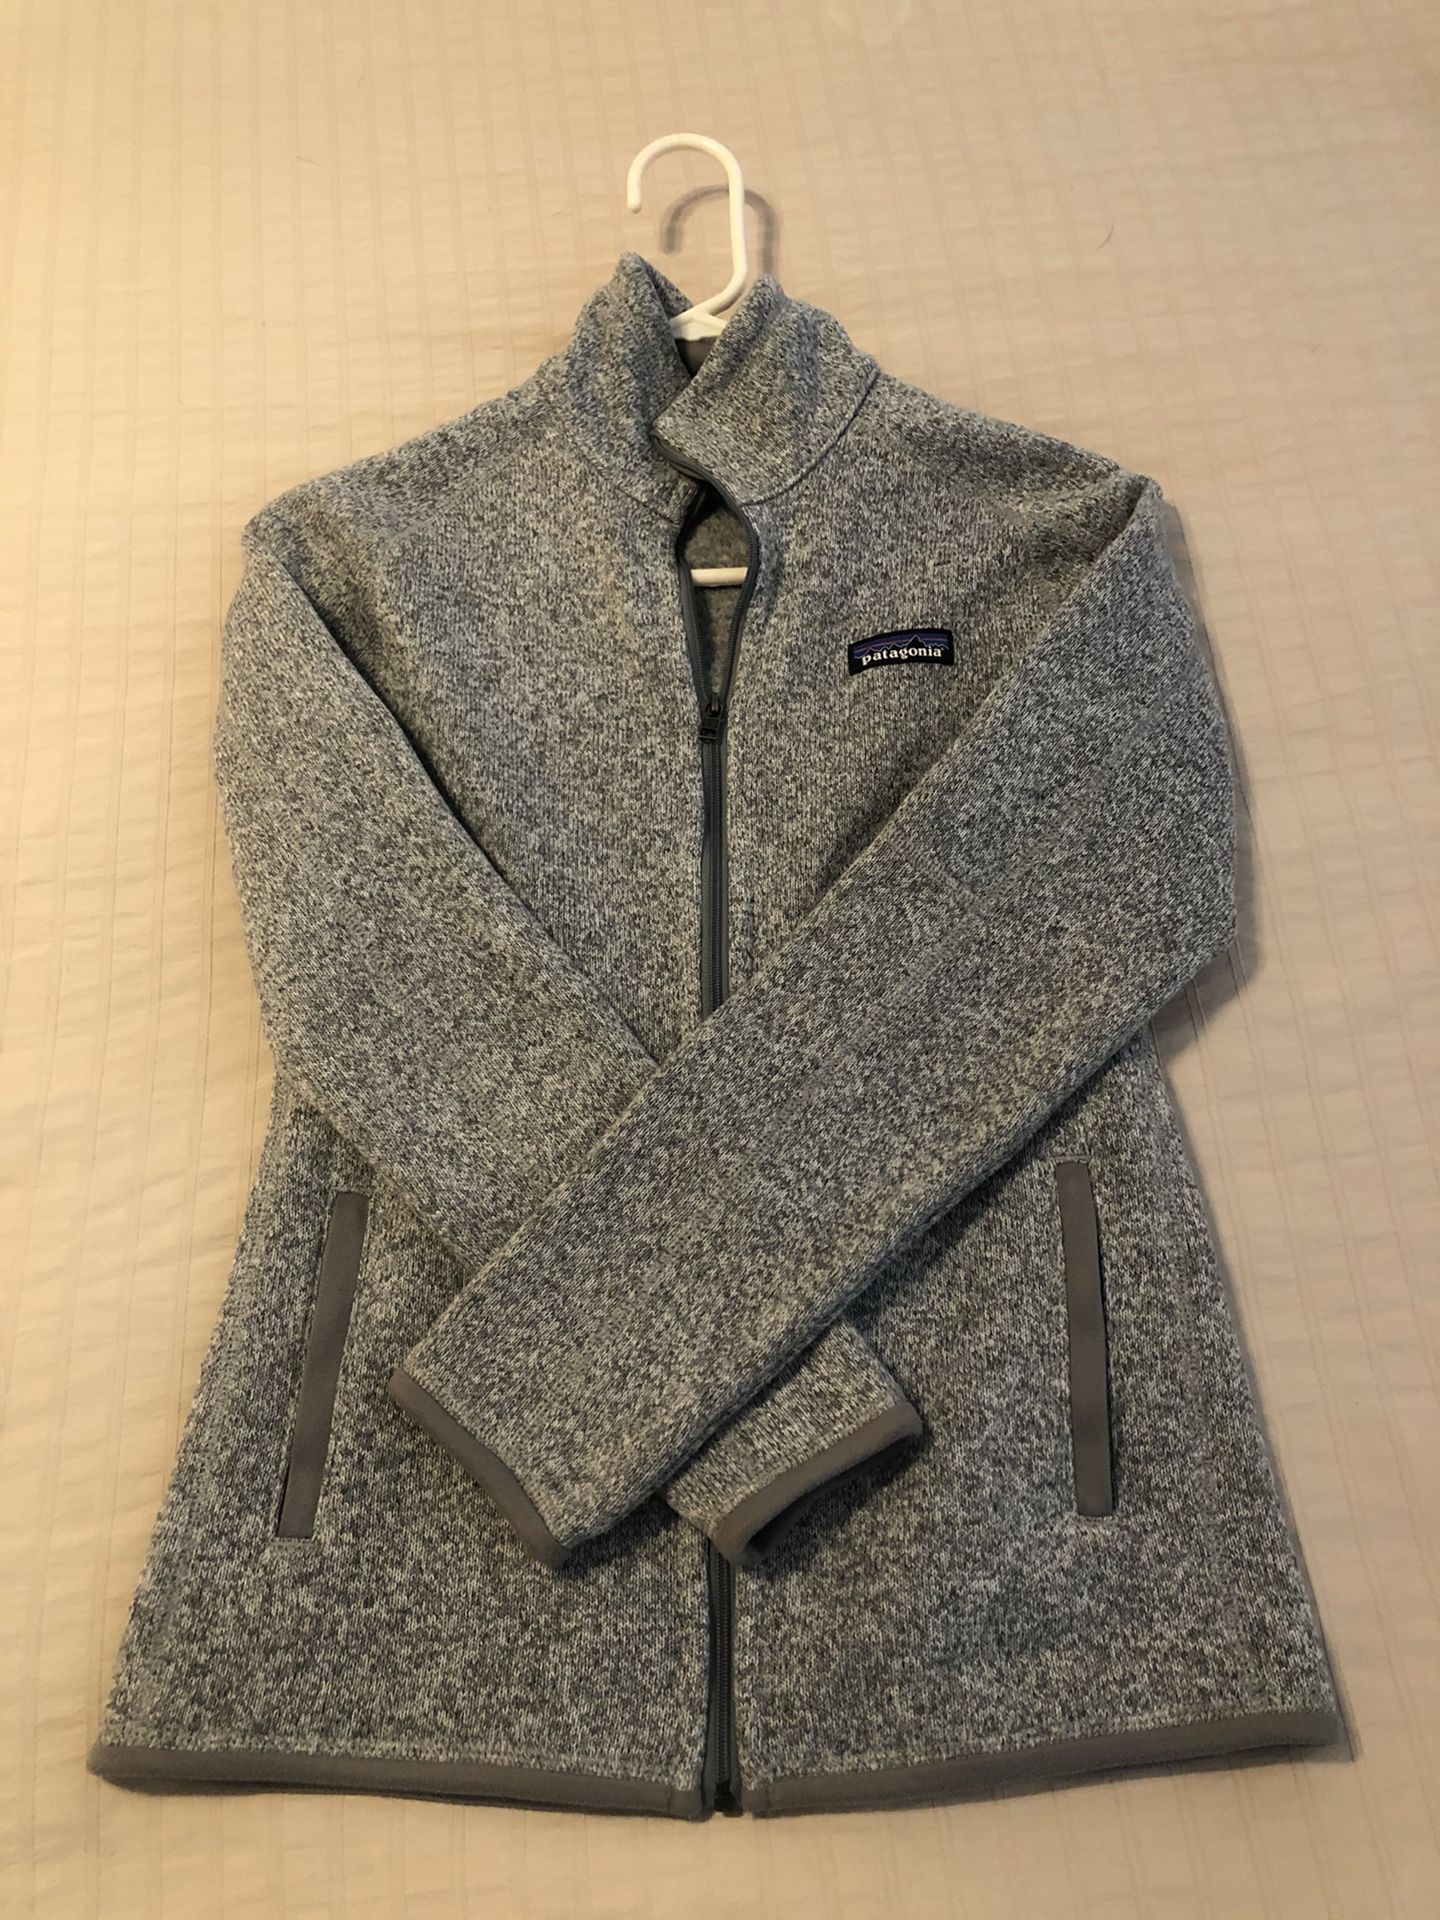 Patagonia XS sweater